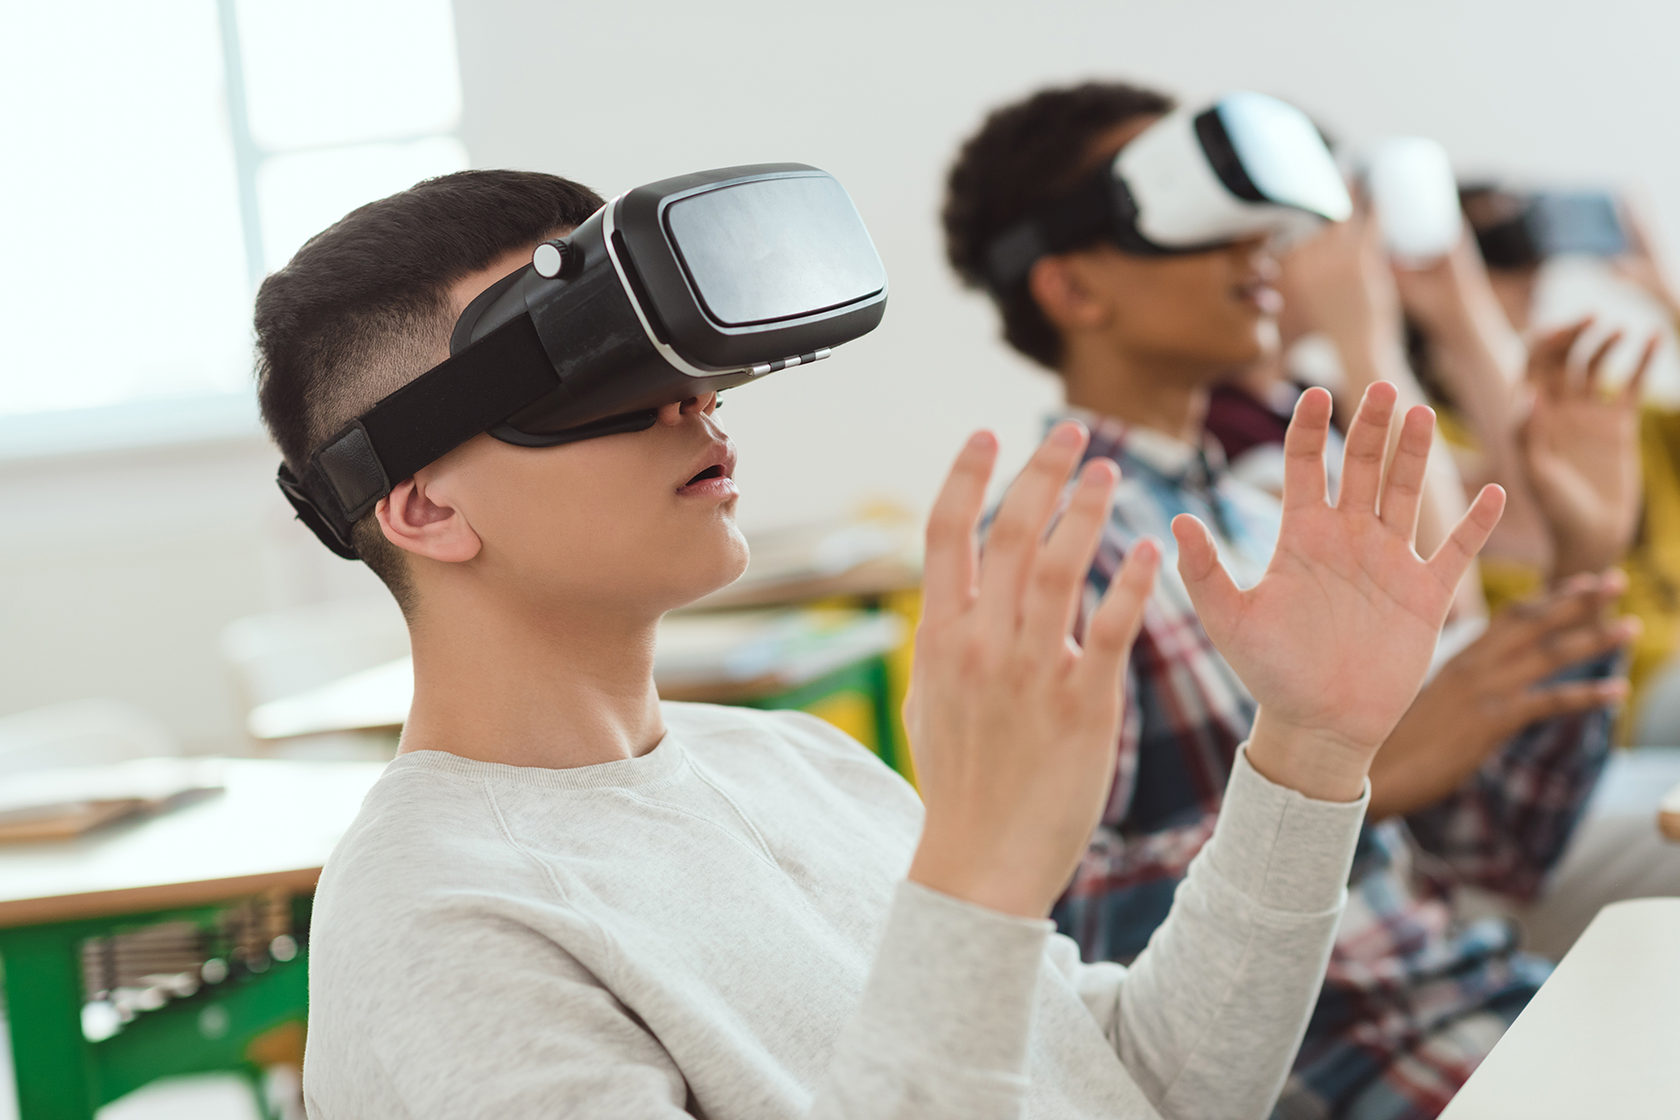 Школа vr. VR технологии в школе. Студенты и школьники виртуальная реальность. Школьник в VR очках. Иммерсивные технологии в образовании.